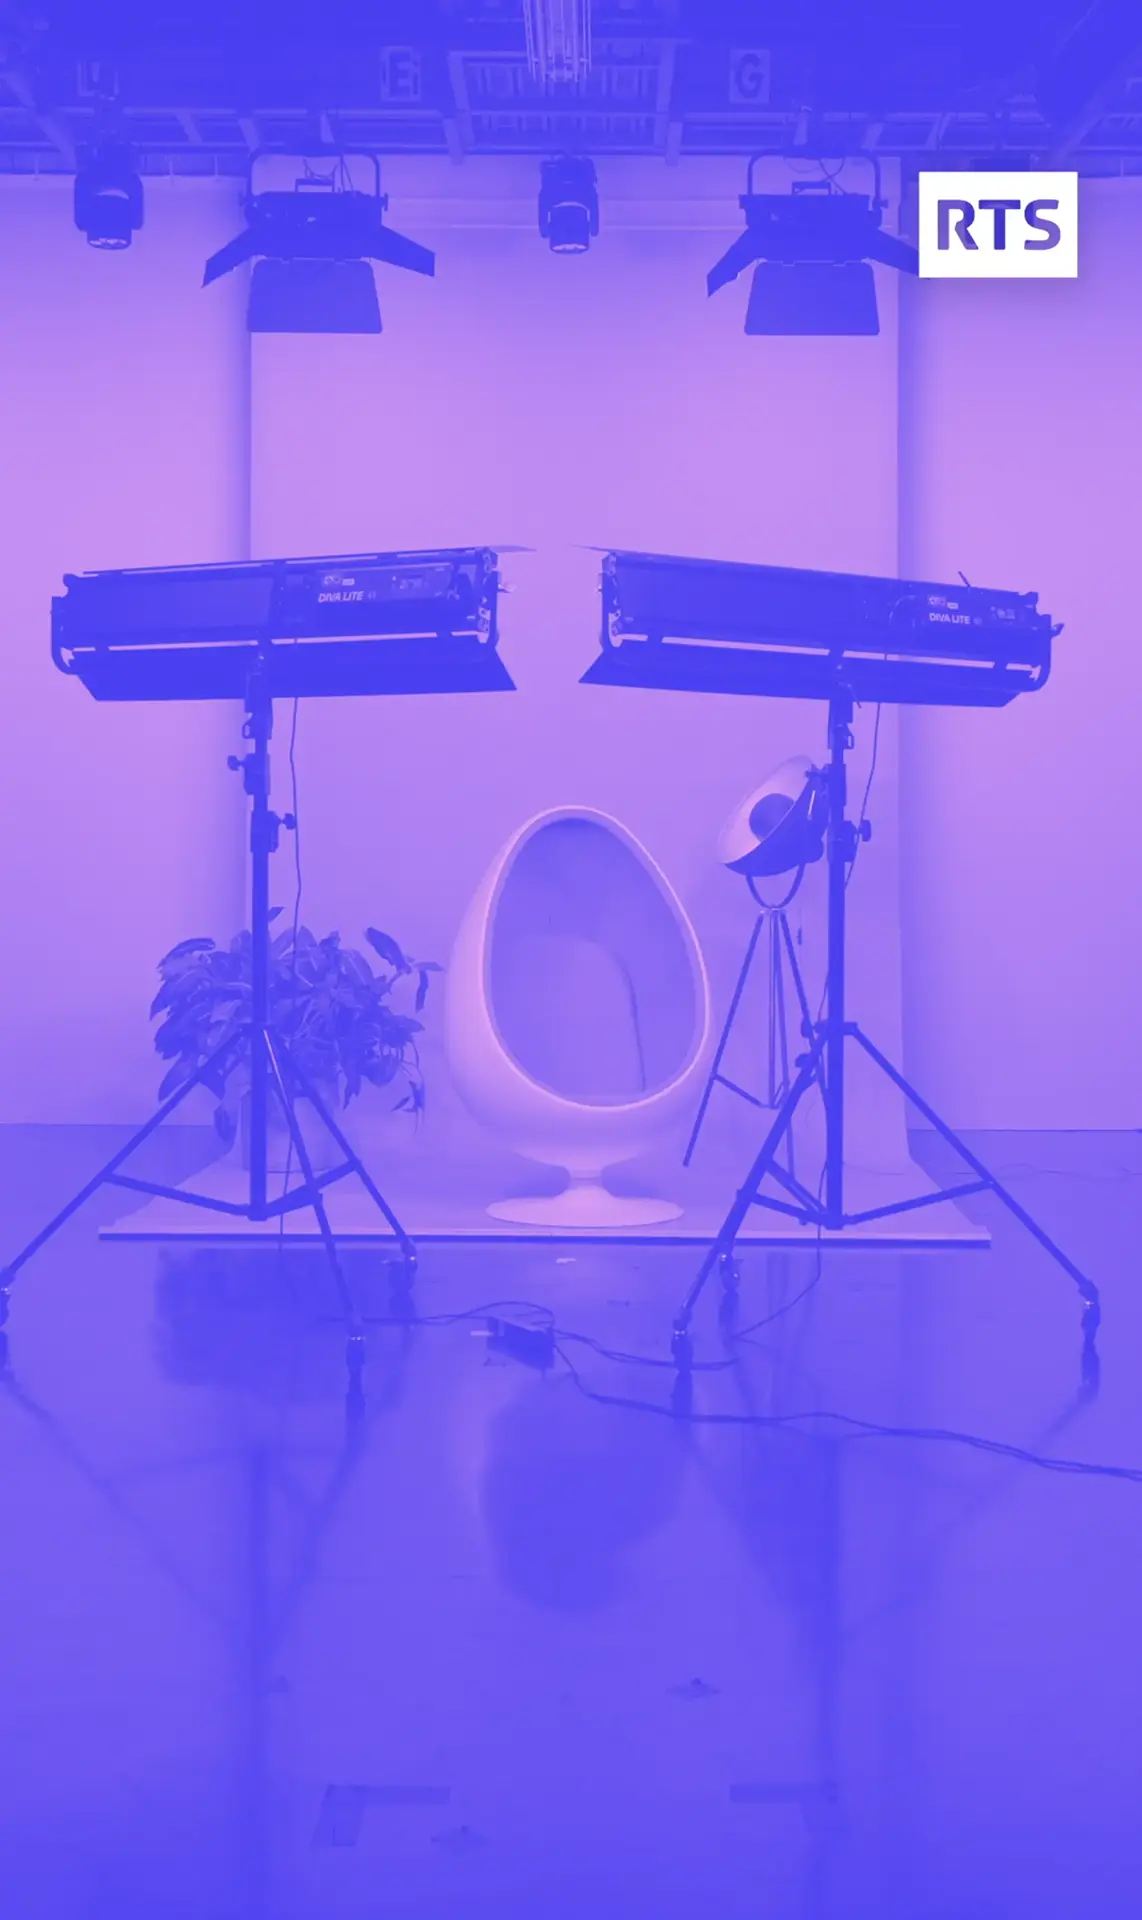 Cornland Studio - vue d'ensemble d'un set vidéo avec un filtre violet